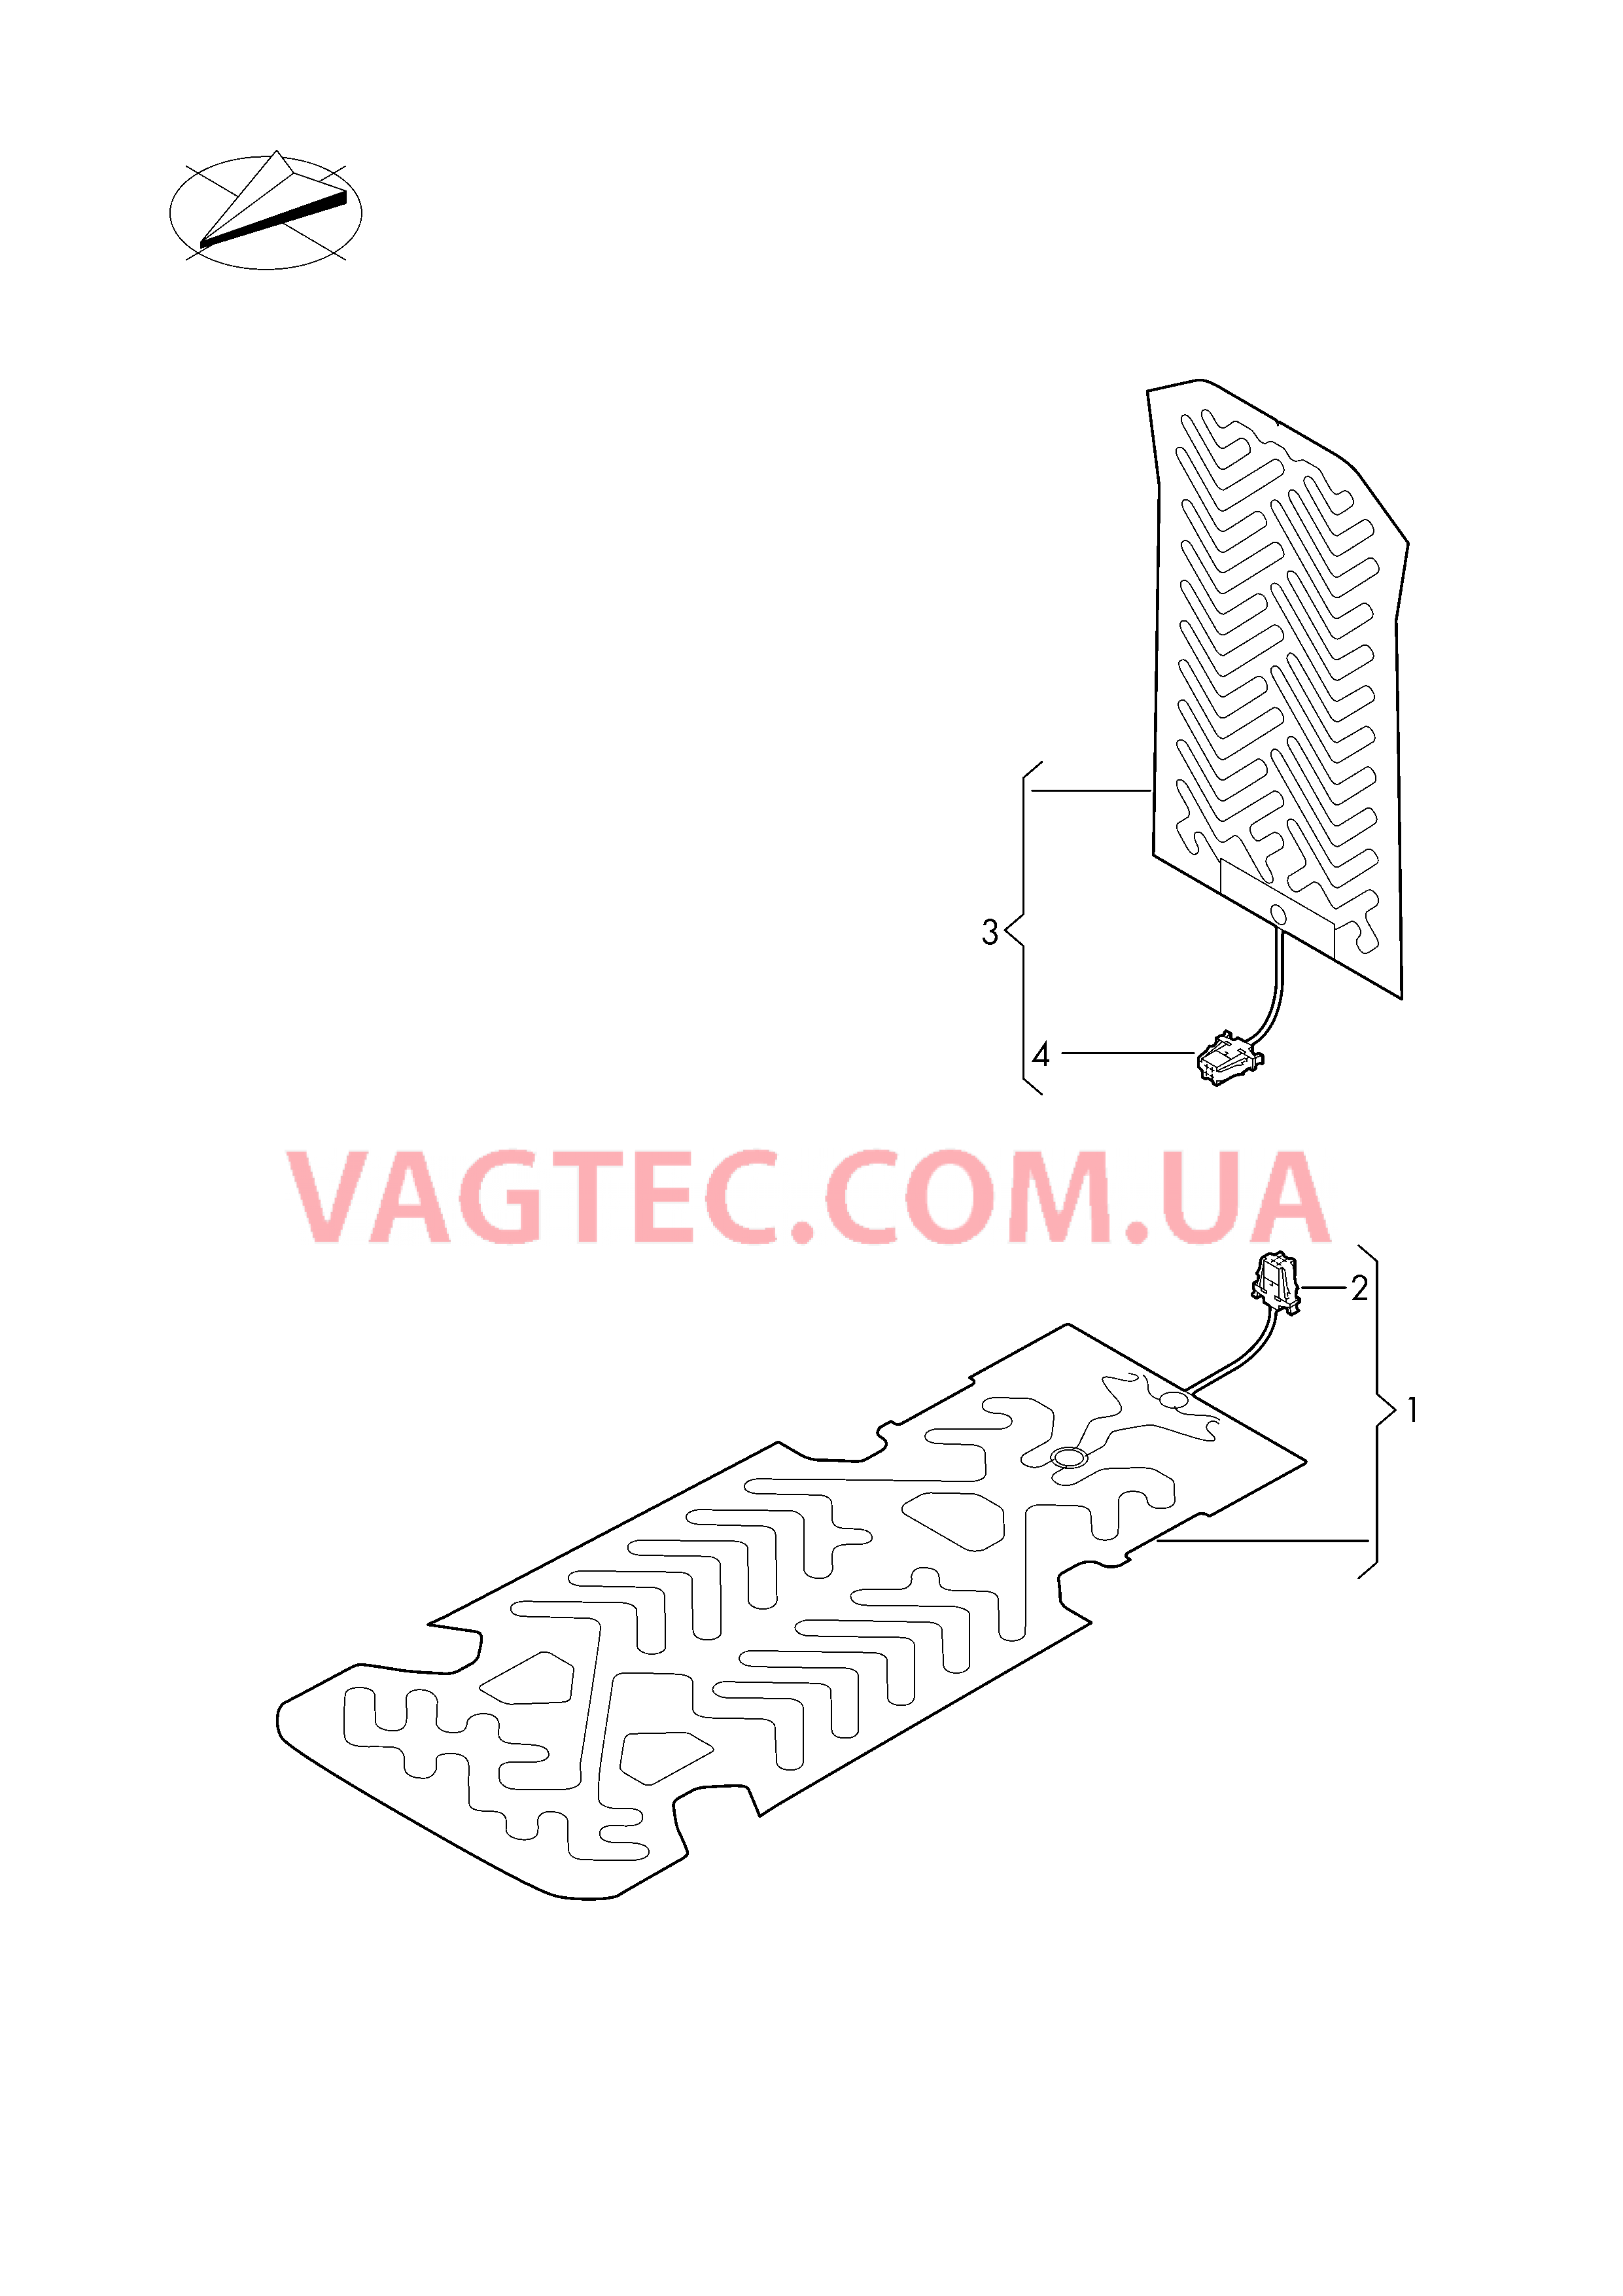 Электродетали для обогрева подушки и спинки сиденья  для VOLKSWAGEN Arteon 2018